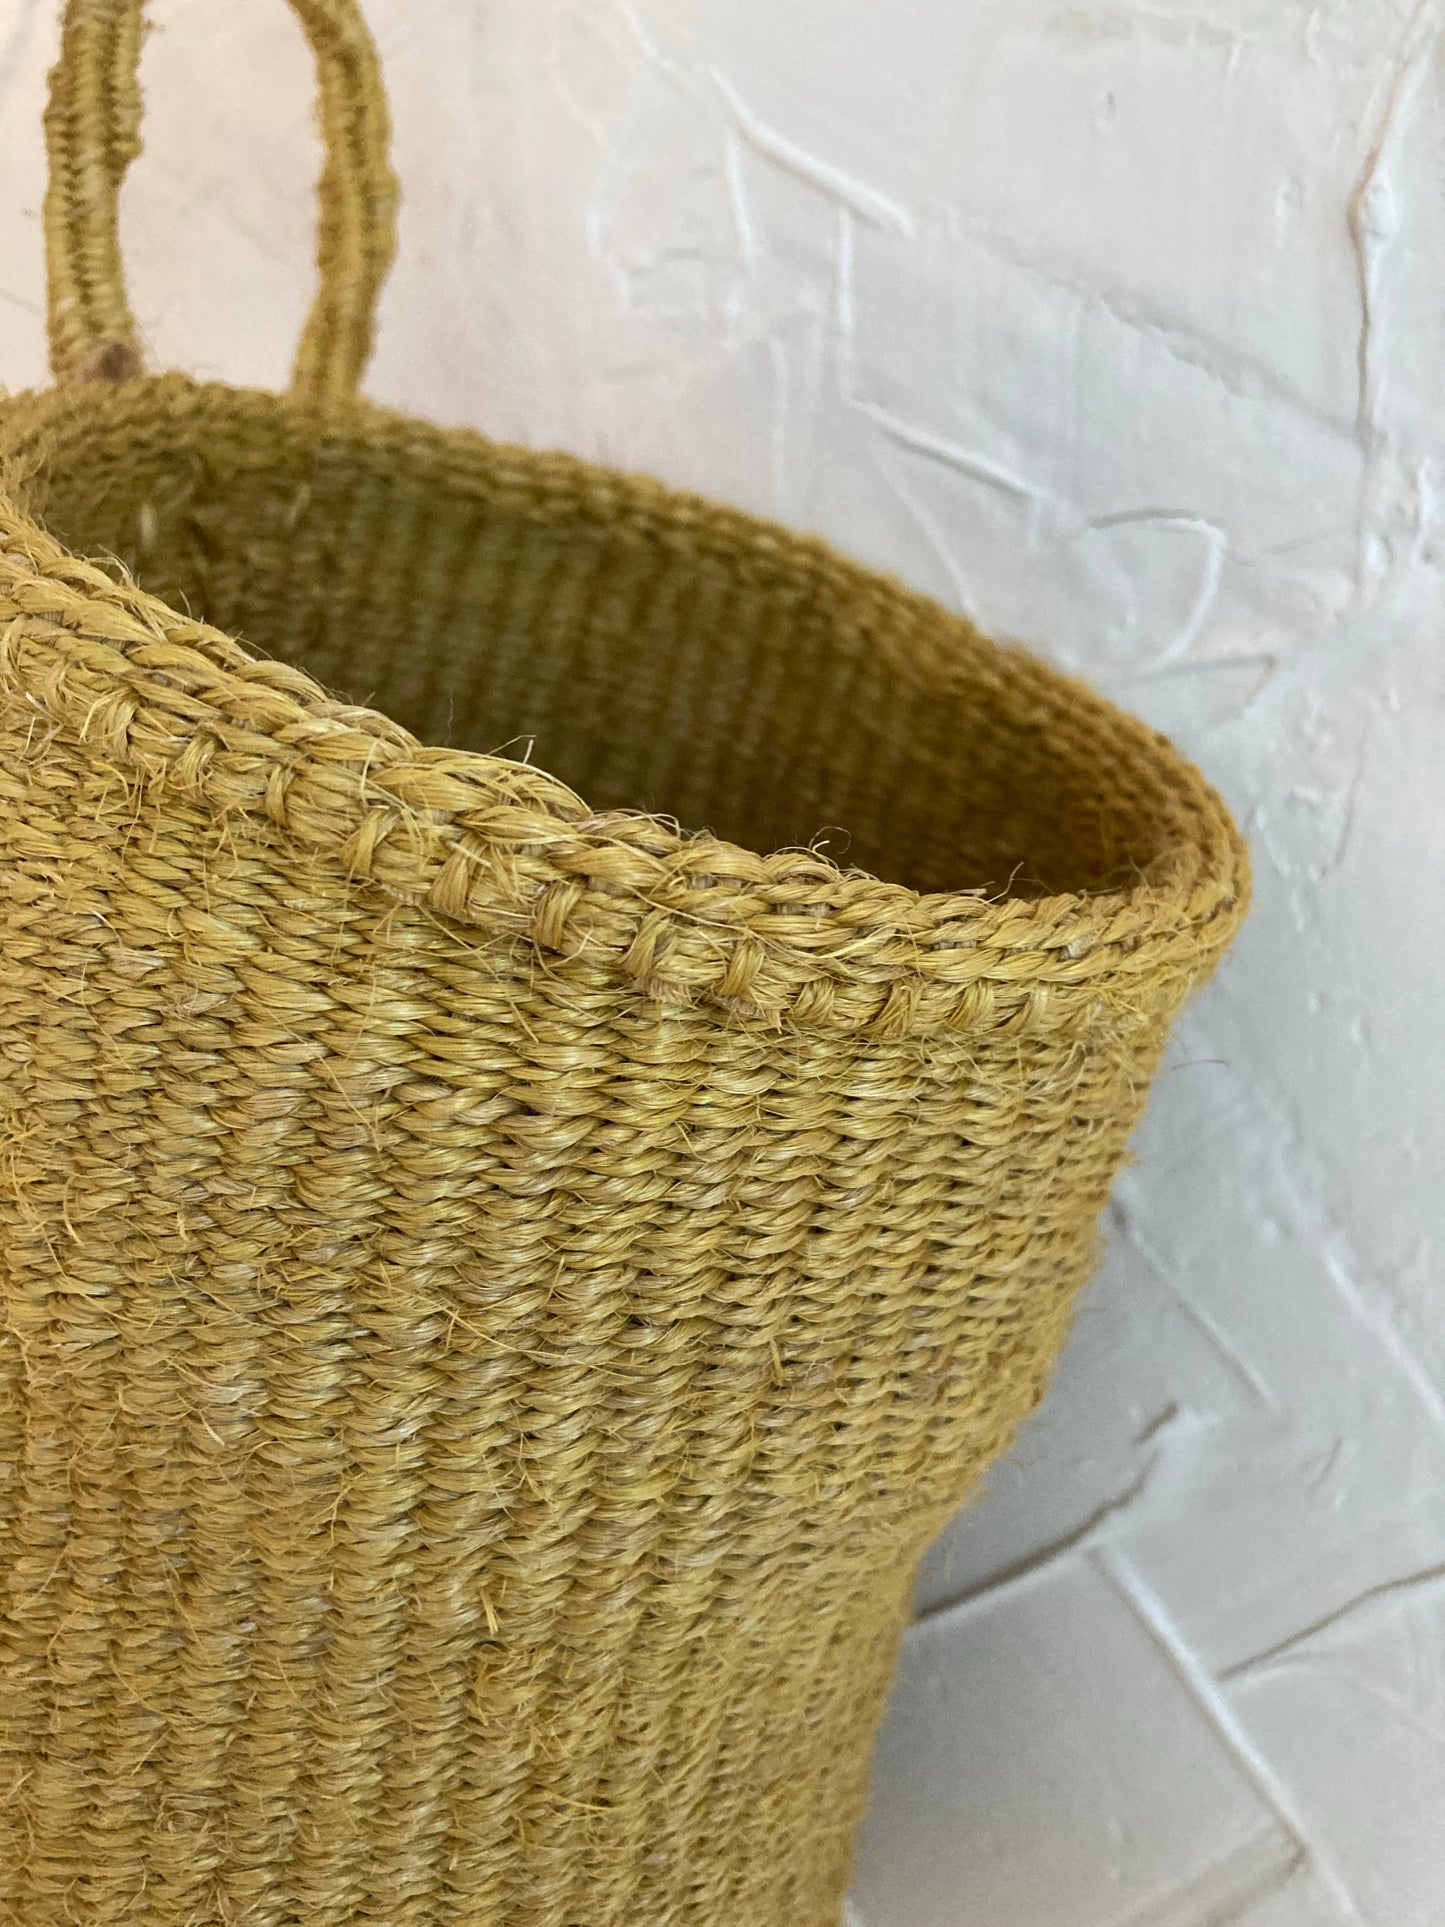 Sisal Hanging Baskets